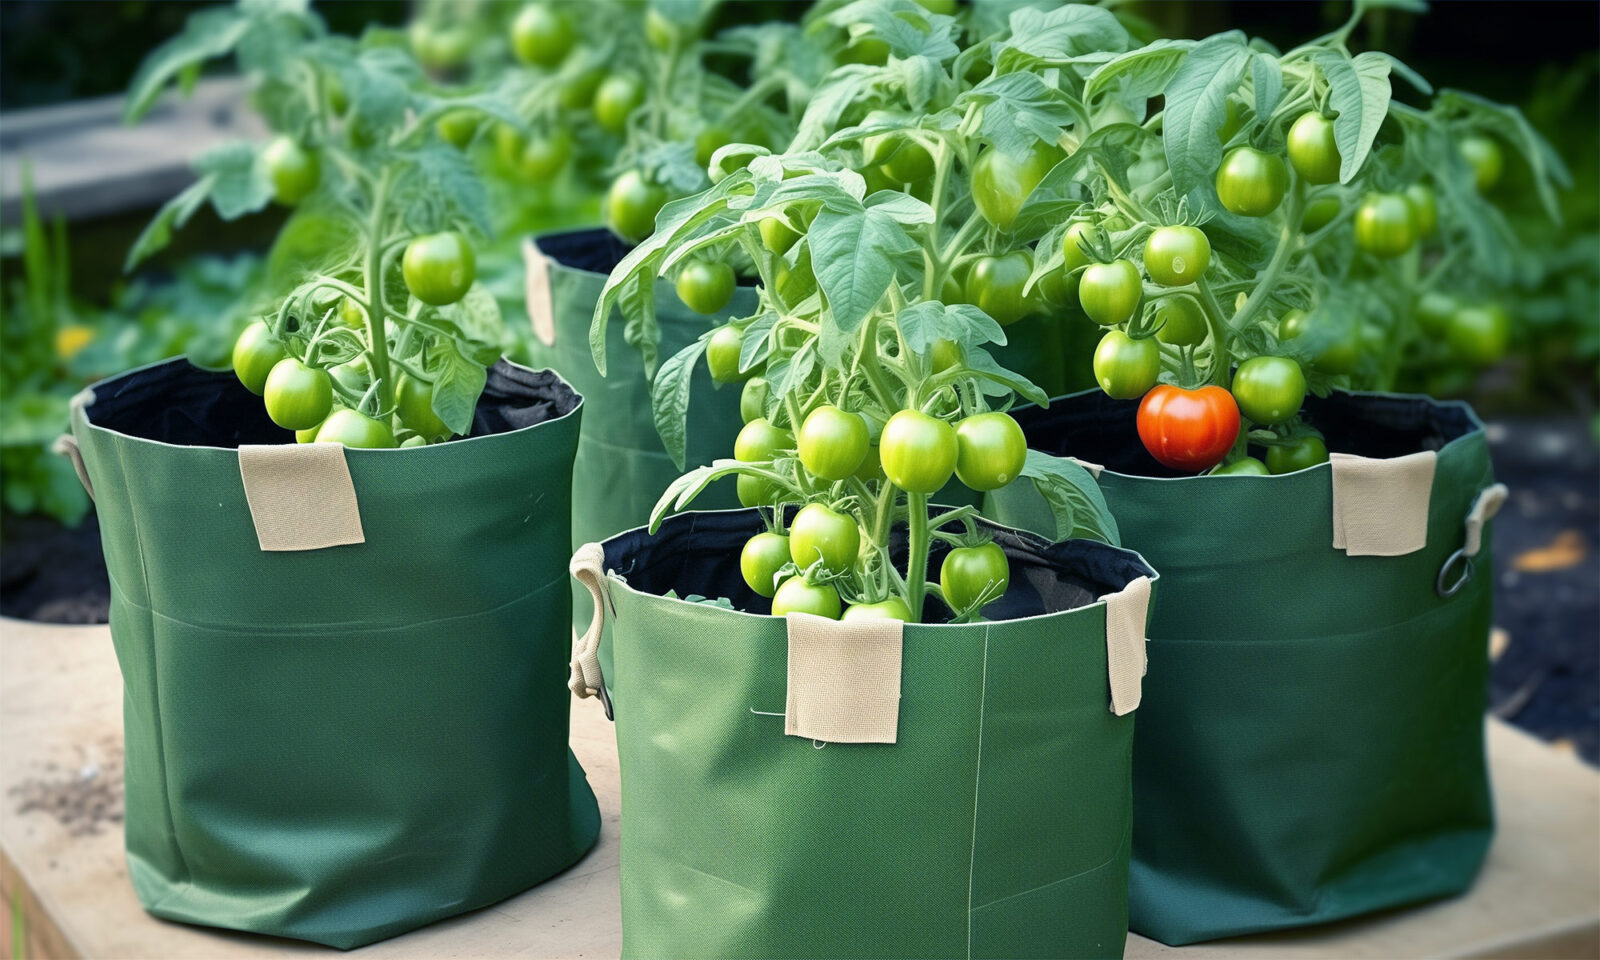 Otkrijte praktične vreće za sadnju rajčica koje štede prostor i olakšavaju uzgoj. Idealne za balkone, terase i vrtove, dostupne u raznim veličinama.